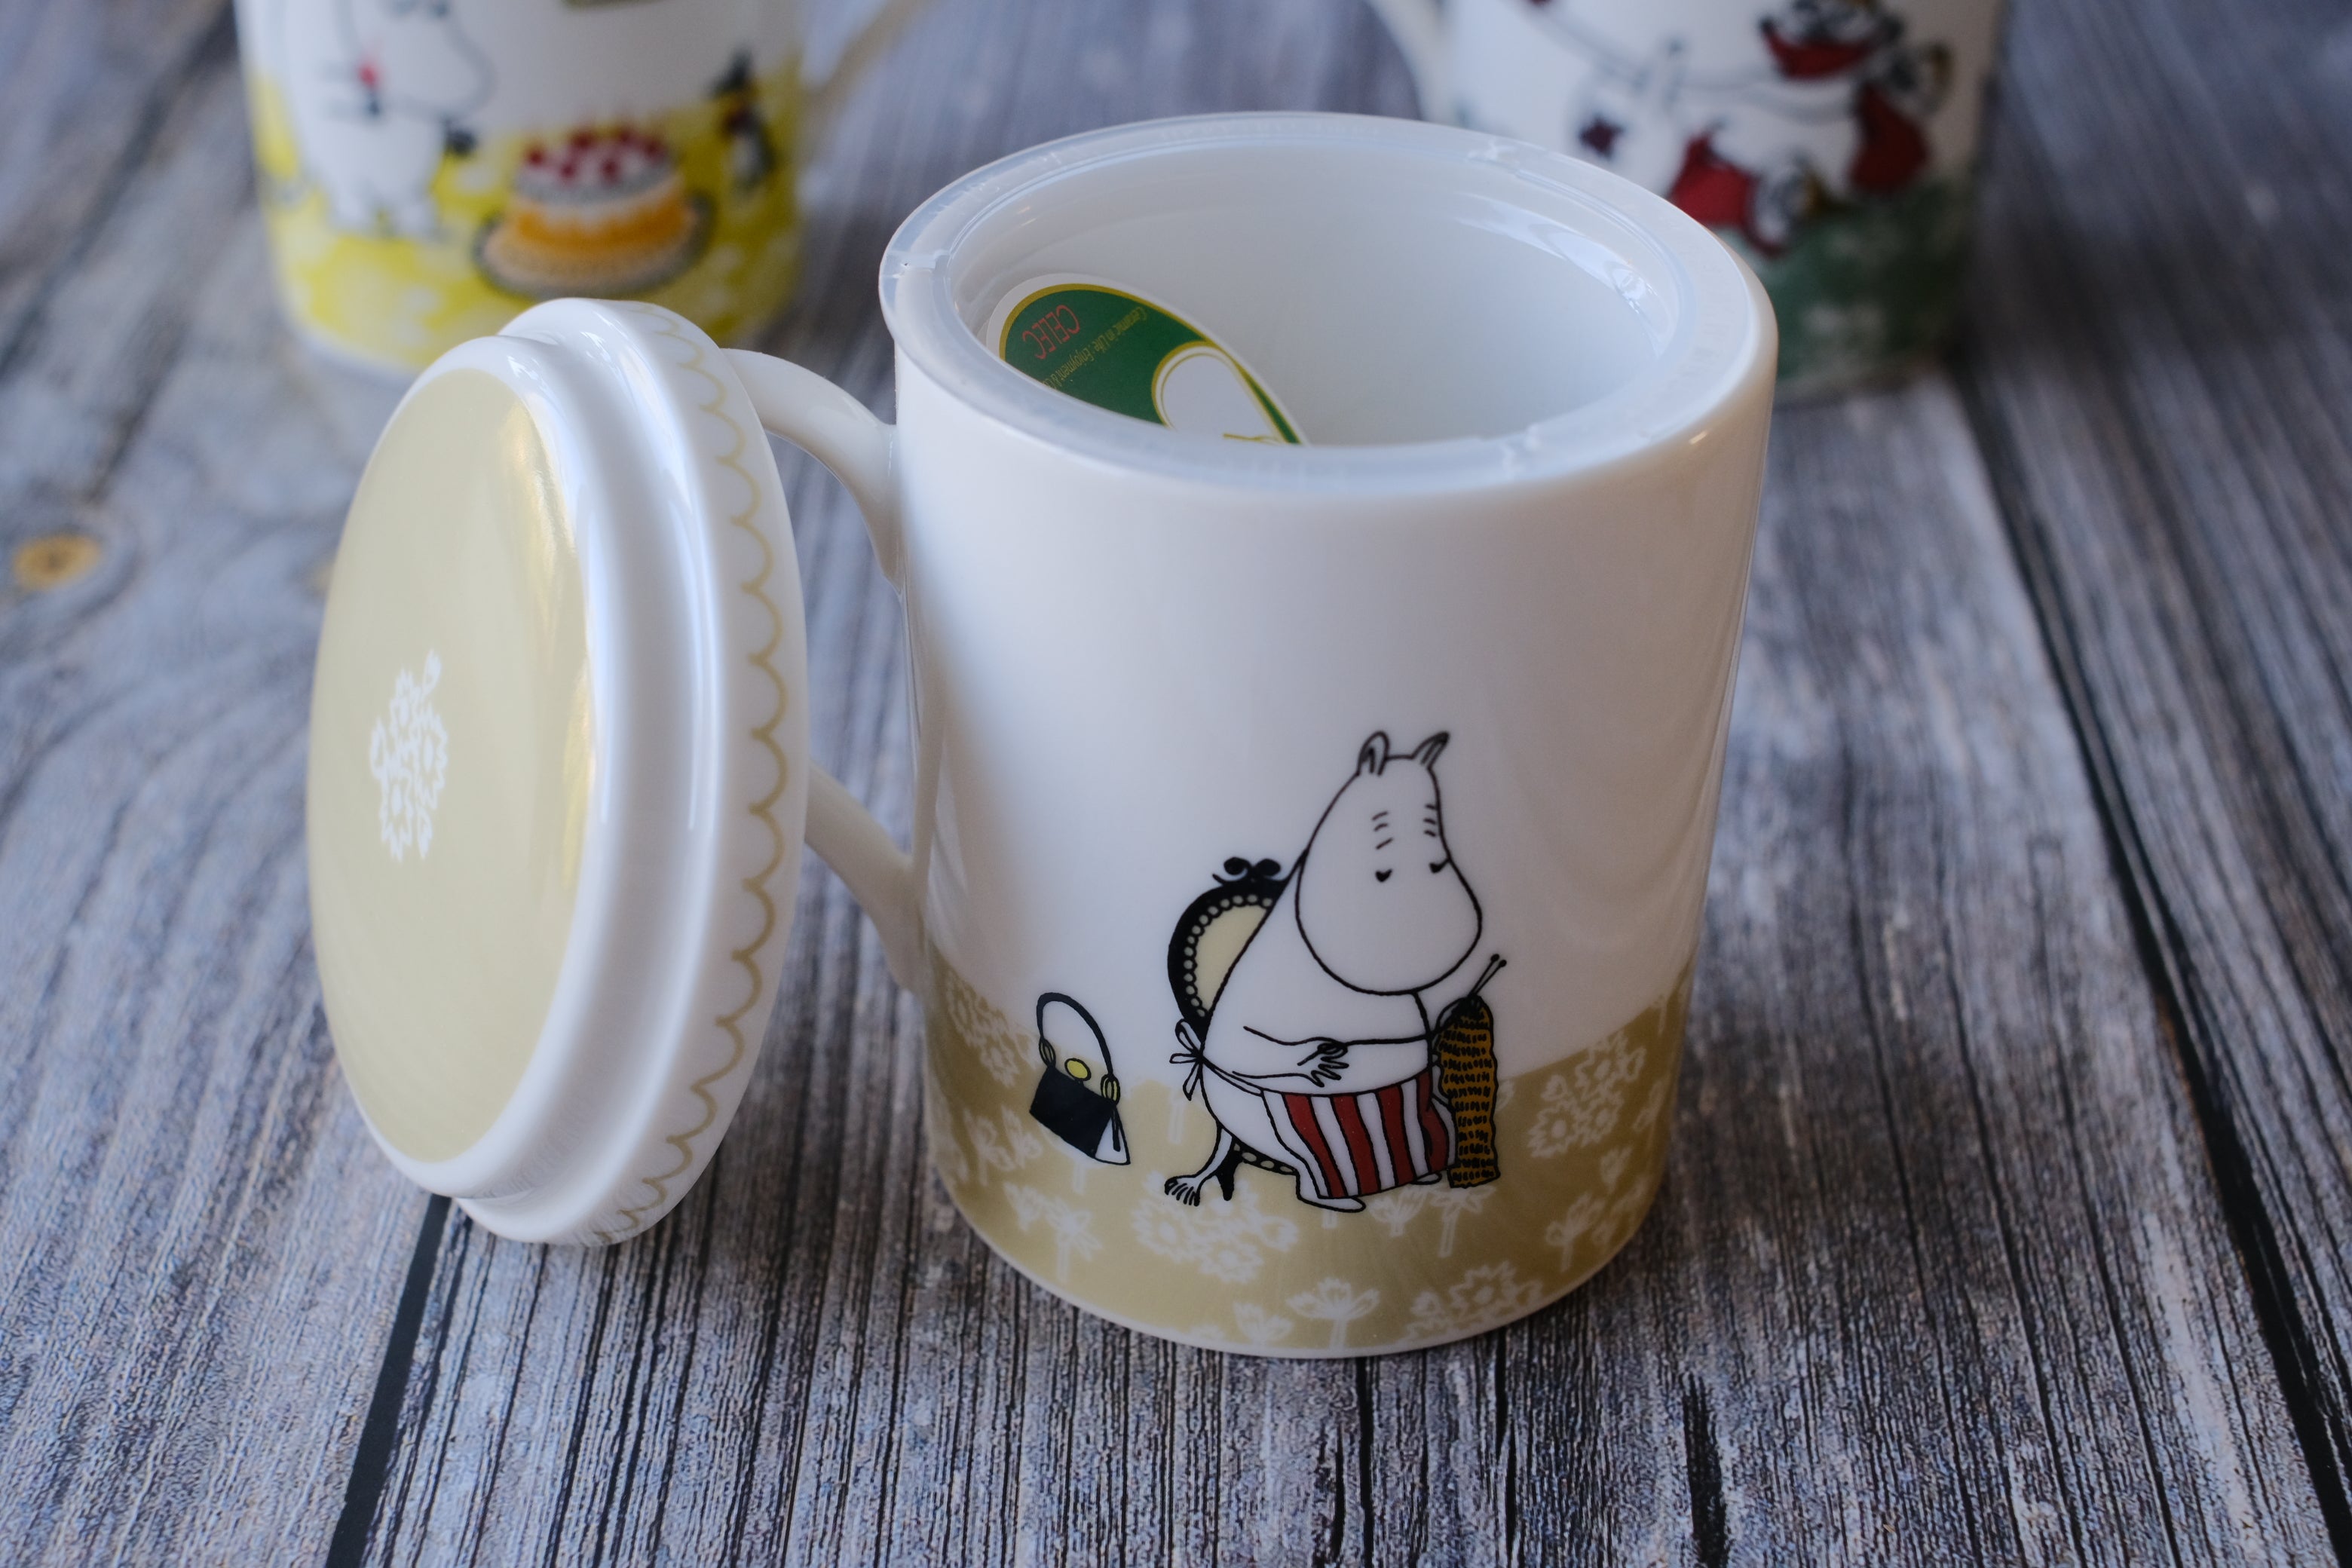 Yamaka Celec Moomin Teamate Deep Steep Tea Mugs with Lid